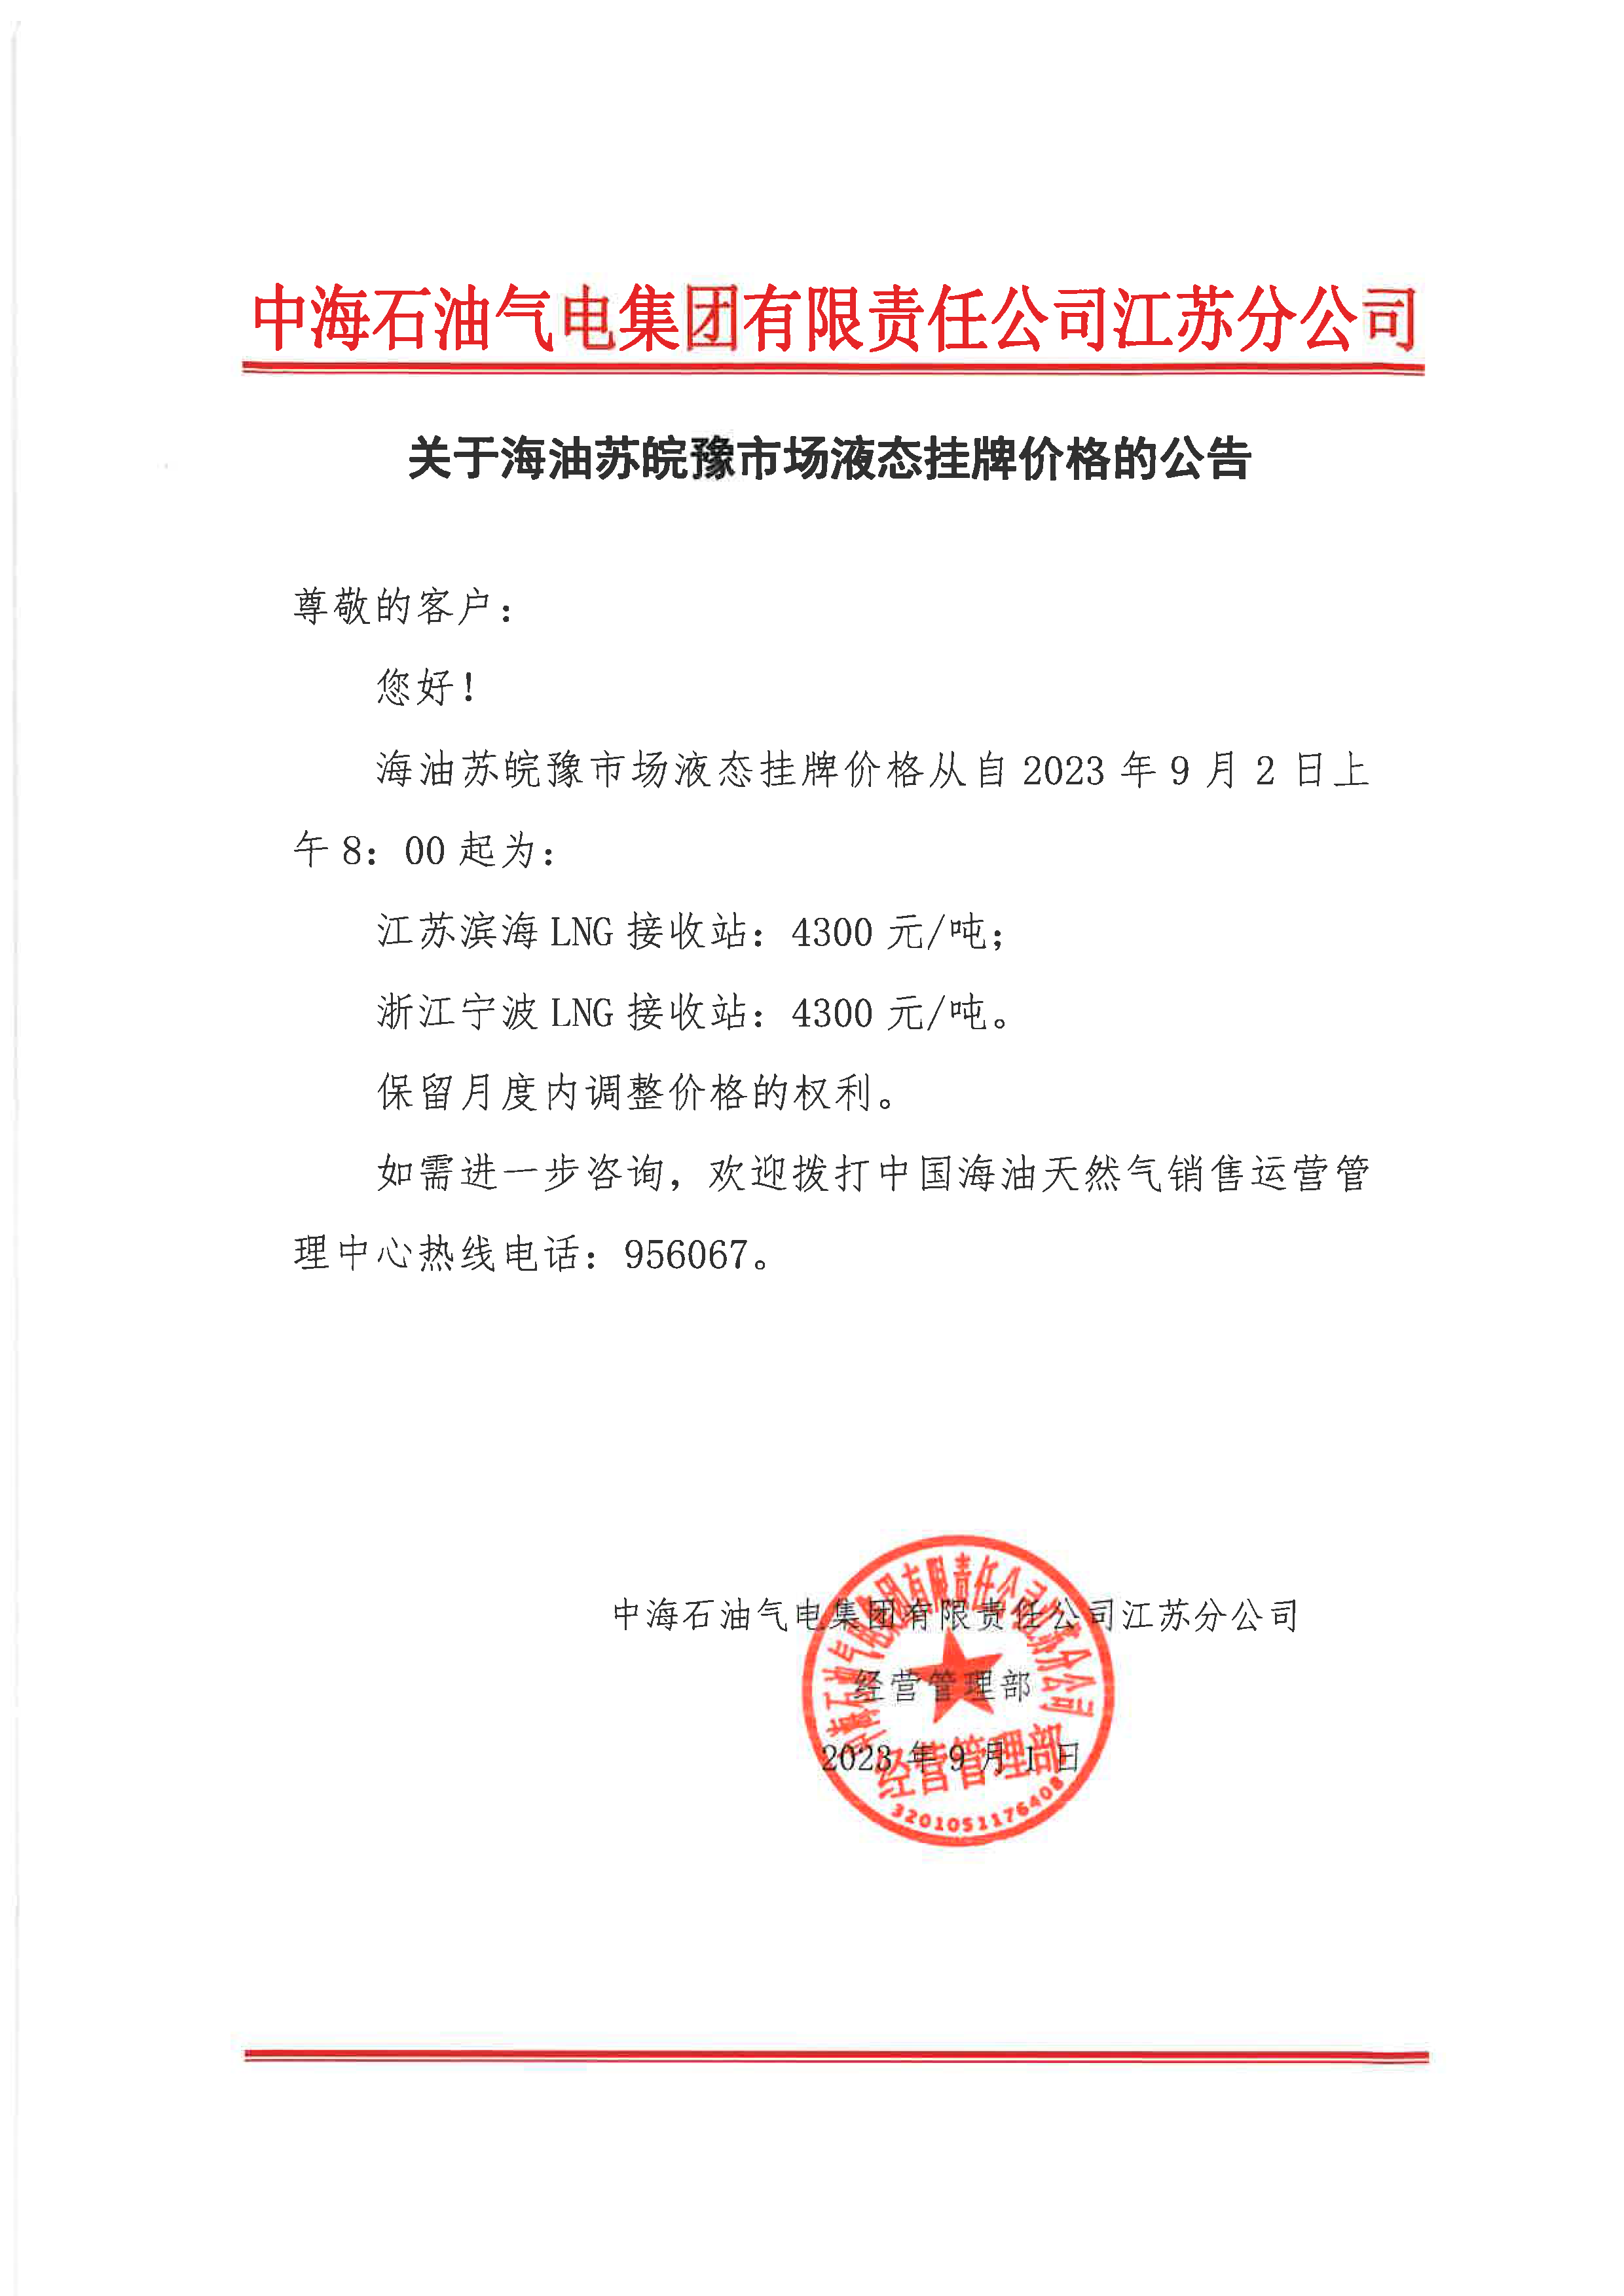 中海油江苏分公司关于9月2日华东苏皖市场价格调整公告.png